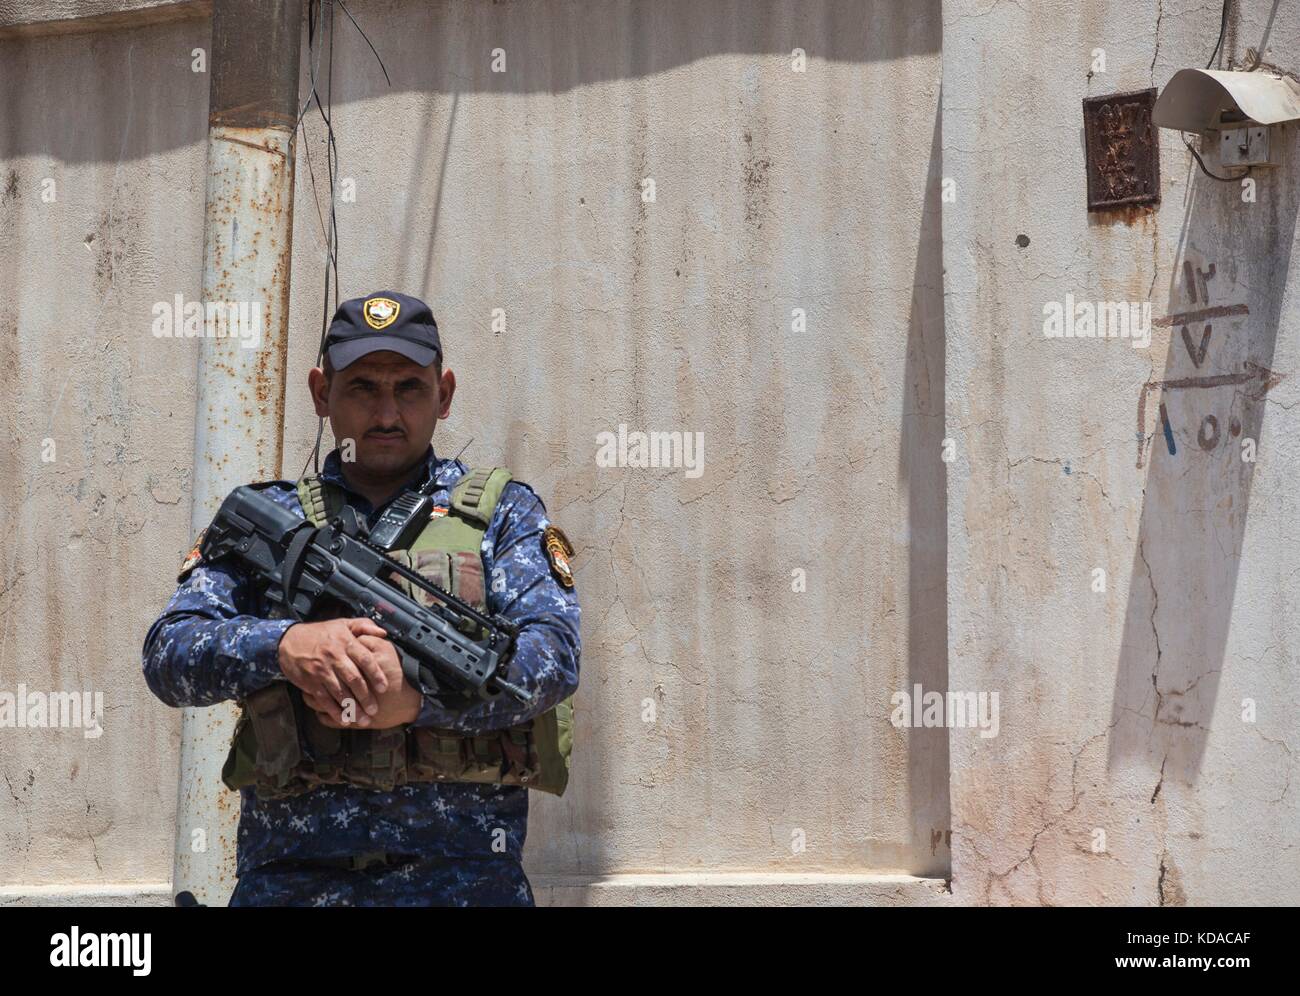 Un iracheno polizia federale officer custodisce una patrol base giugno 29, 2017 a Mosul, Iraq. vi è stato uno sforzo combinato tra gli Stati Uniti e le forze irachene nella zona per sconfiggere gli estremisti di ISIS. Foto Stock